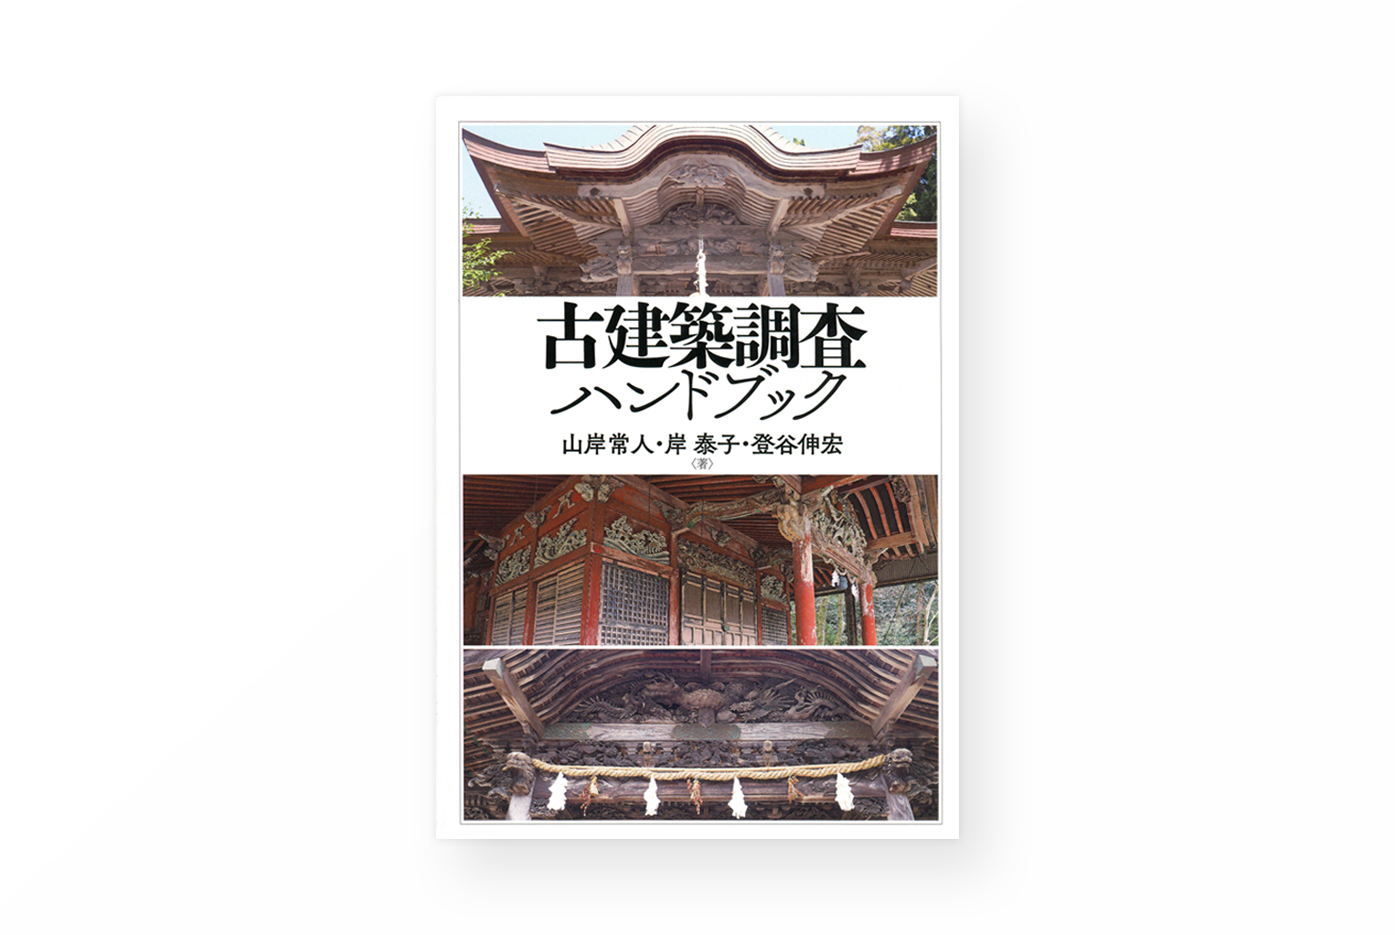 PHOTO: 登谷伸宏准教授らによる共著『古建築調査ハンドブック』が出版されました